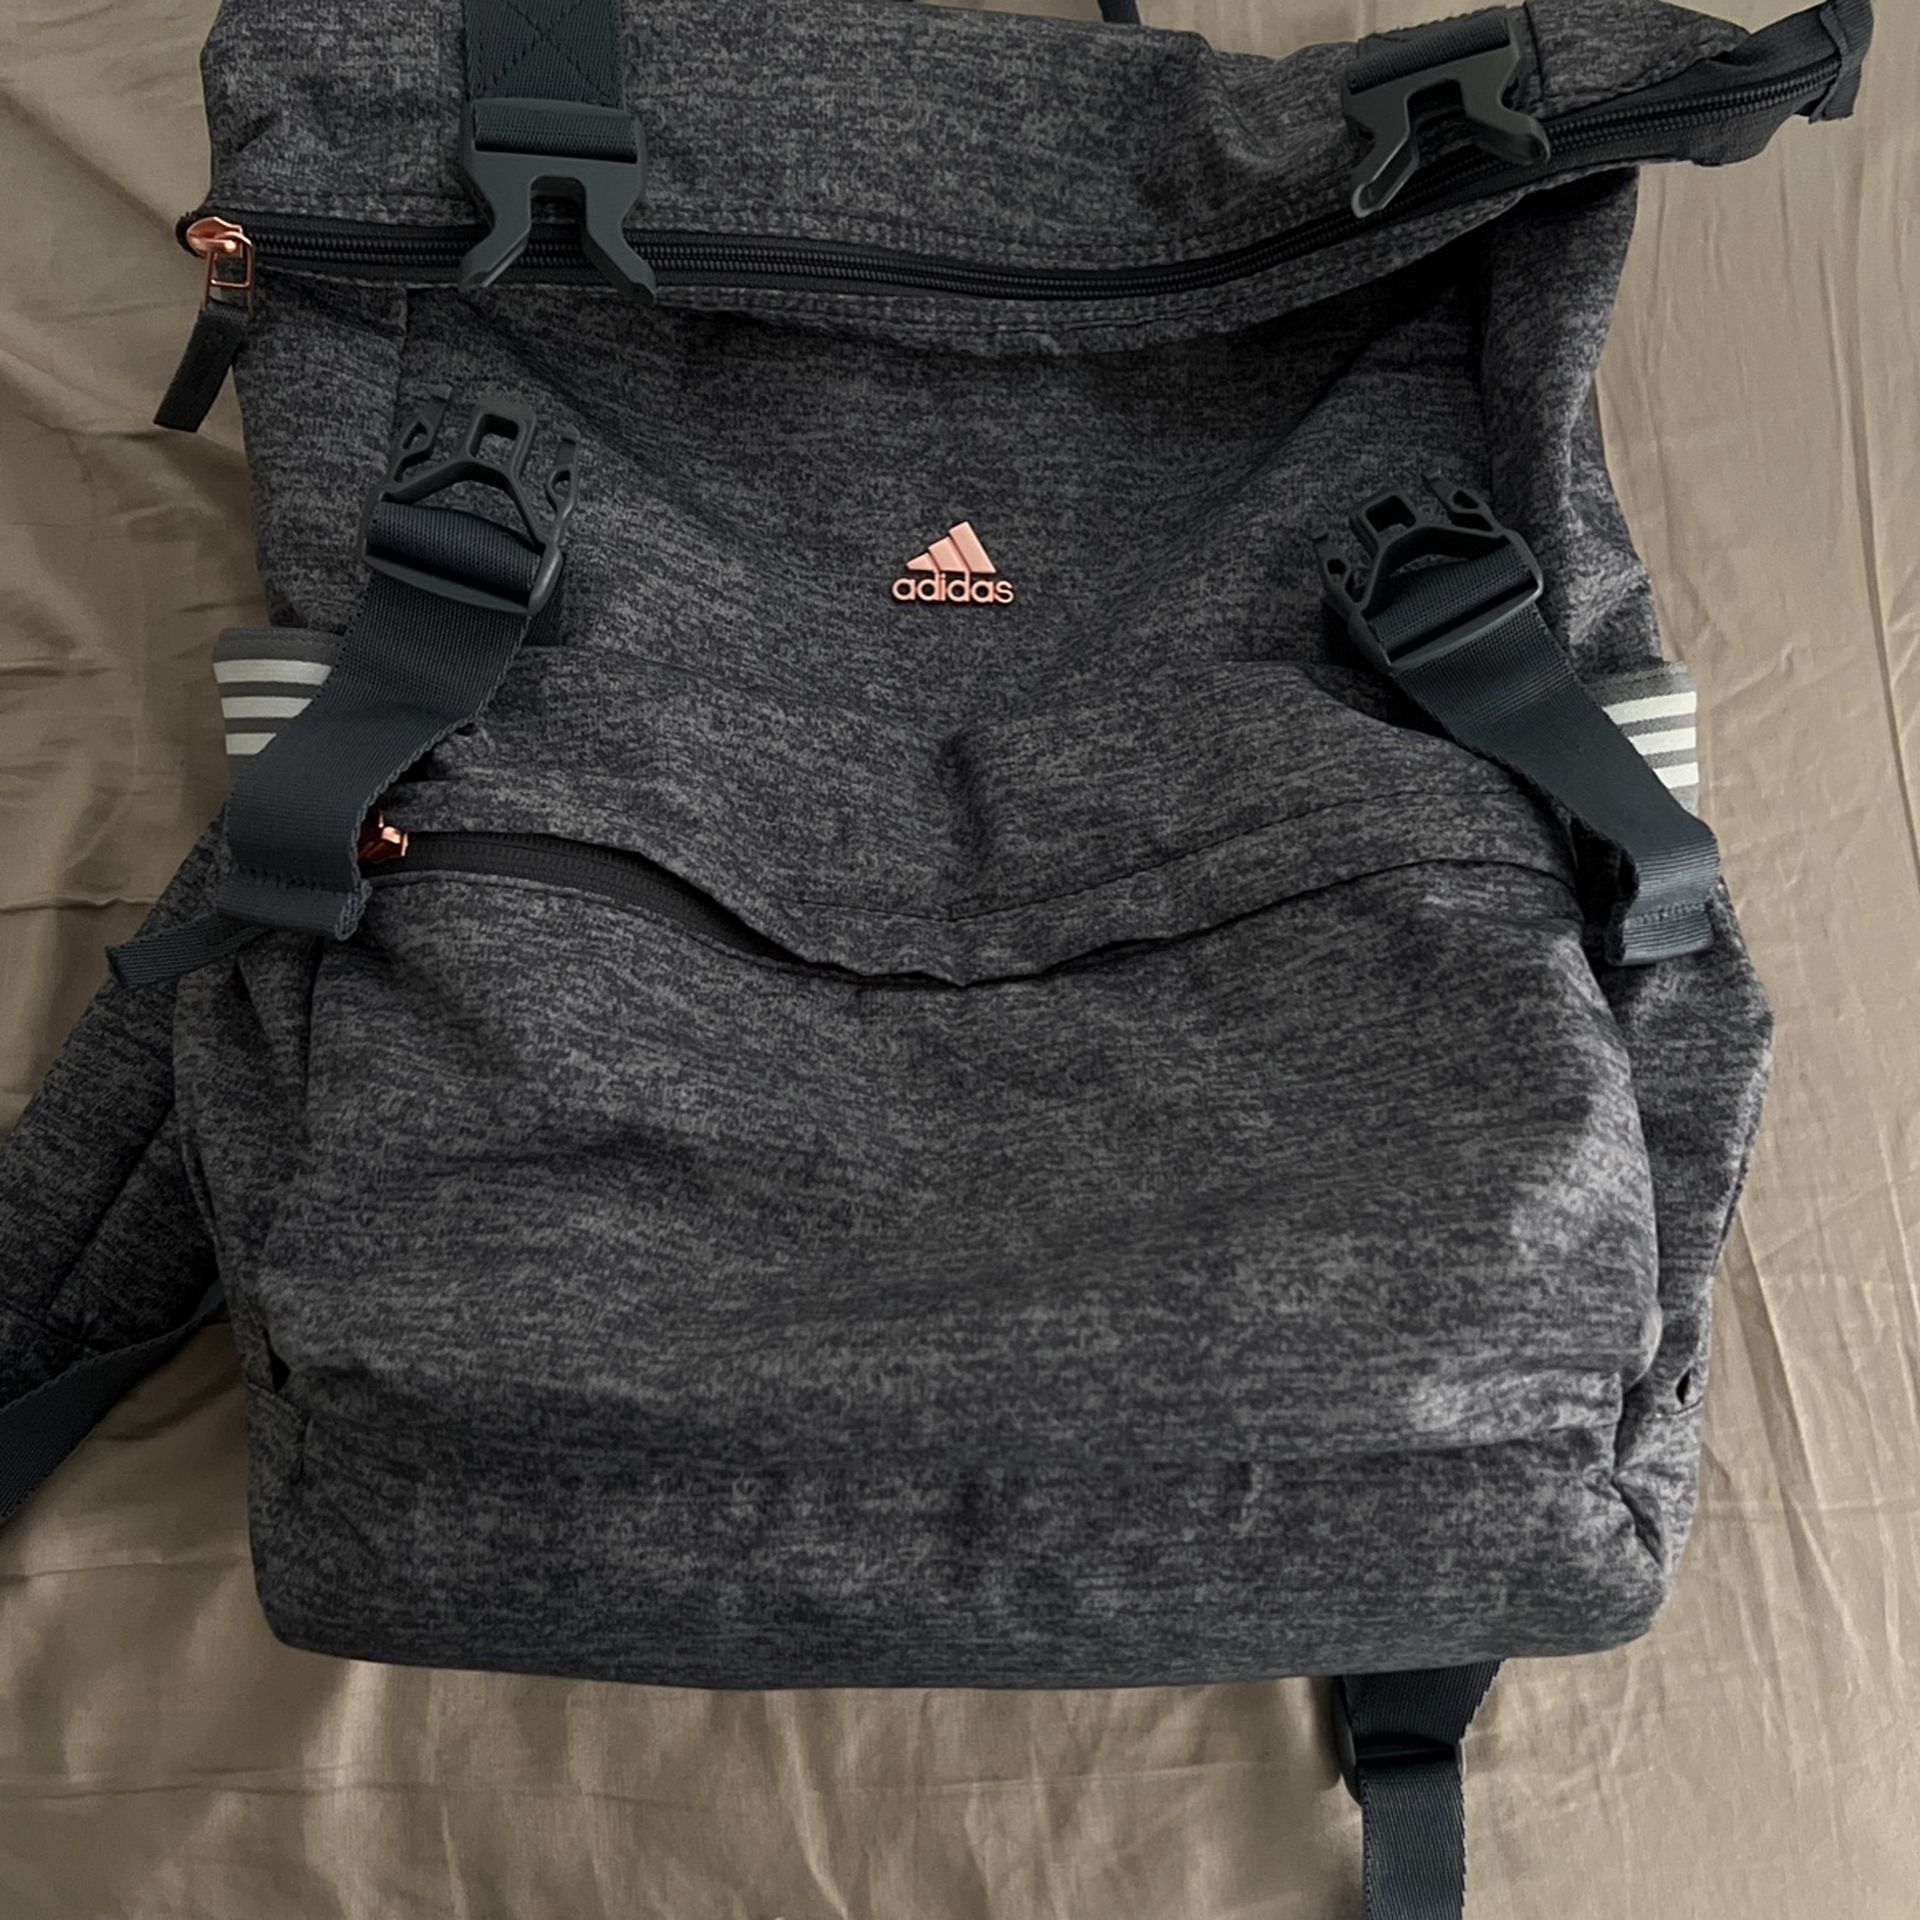 Adidas Women's Yola III Backpack